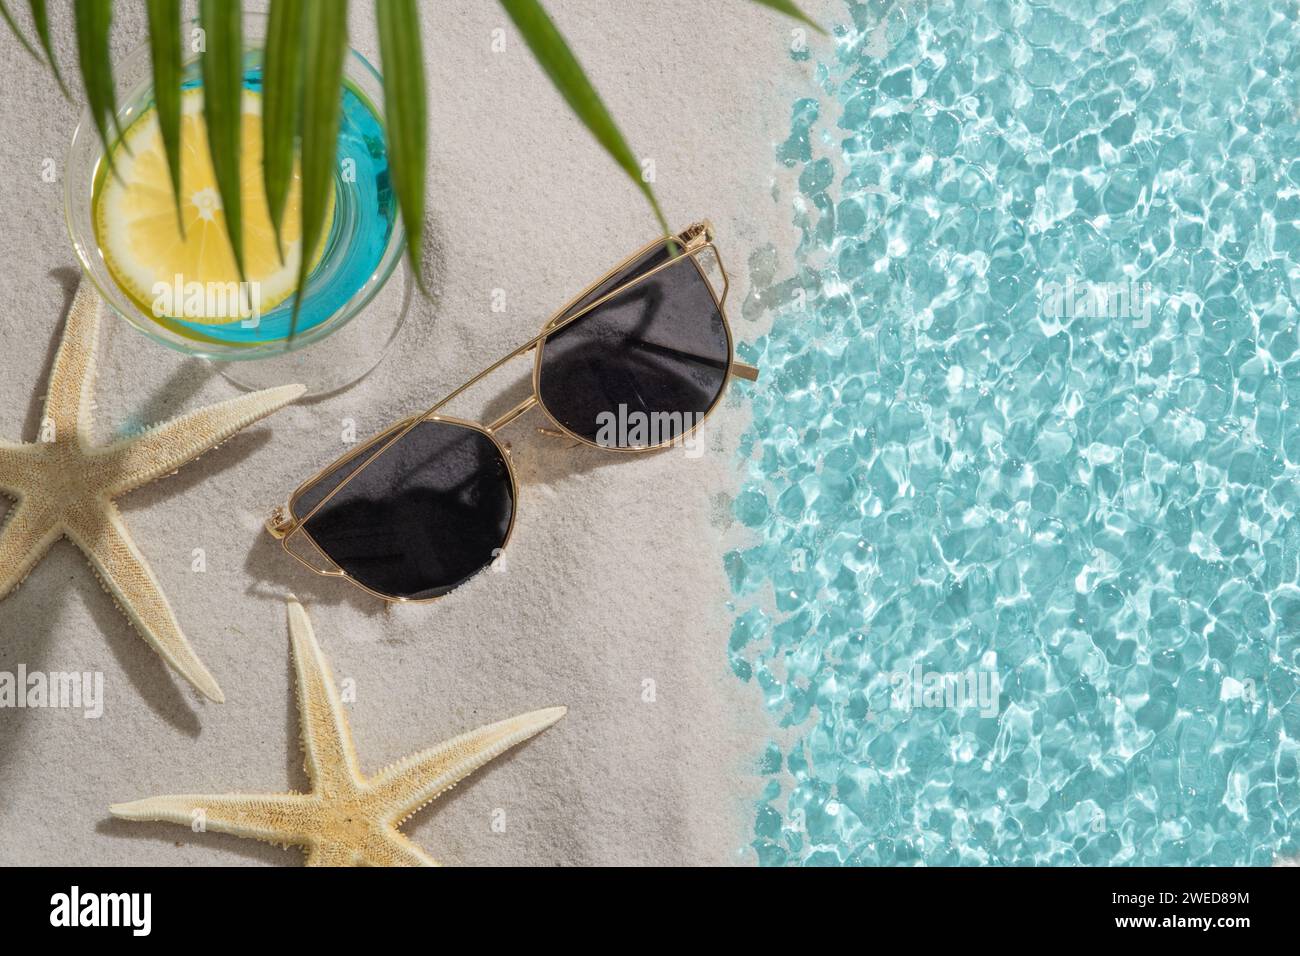 Un lac au bord du sable avec des lunettes de soleil, deux étoiles de mer et un verre à cocktail rempli de liquide bleu et une tranche de citron. Ange plat Banque D'Images